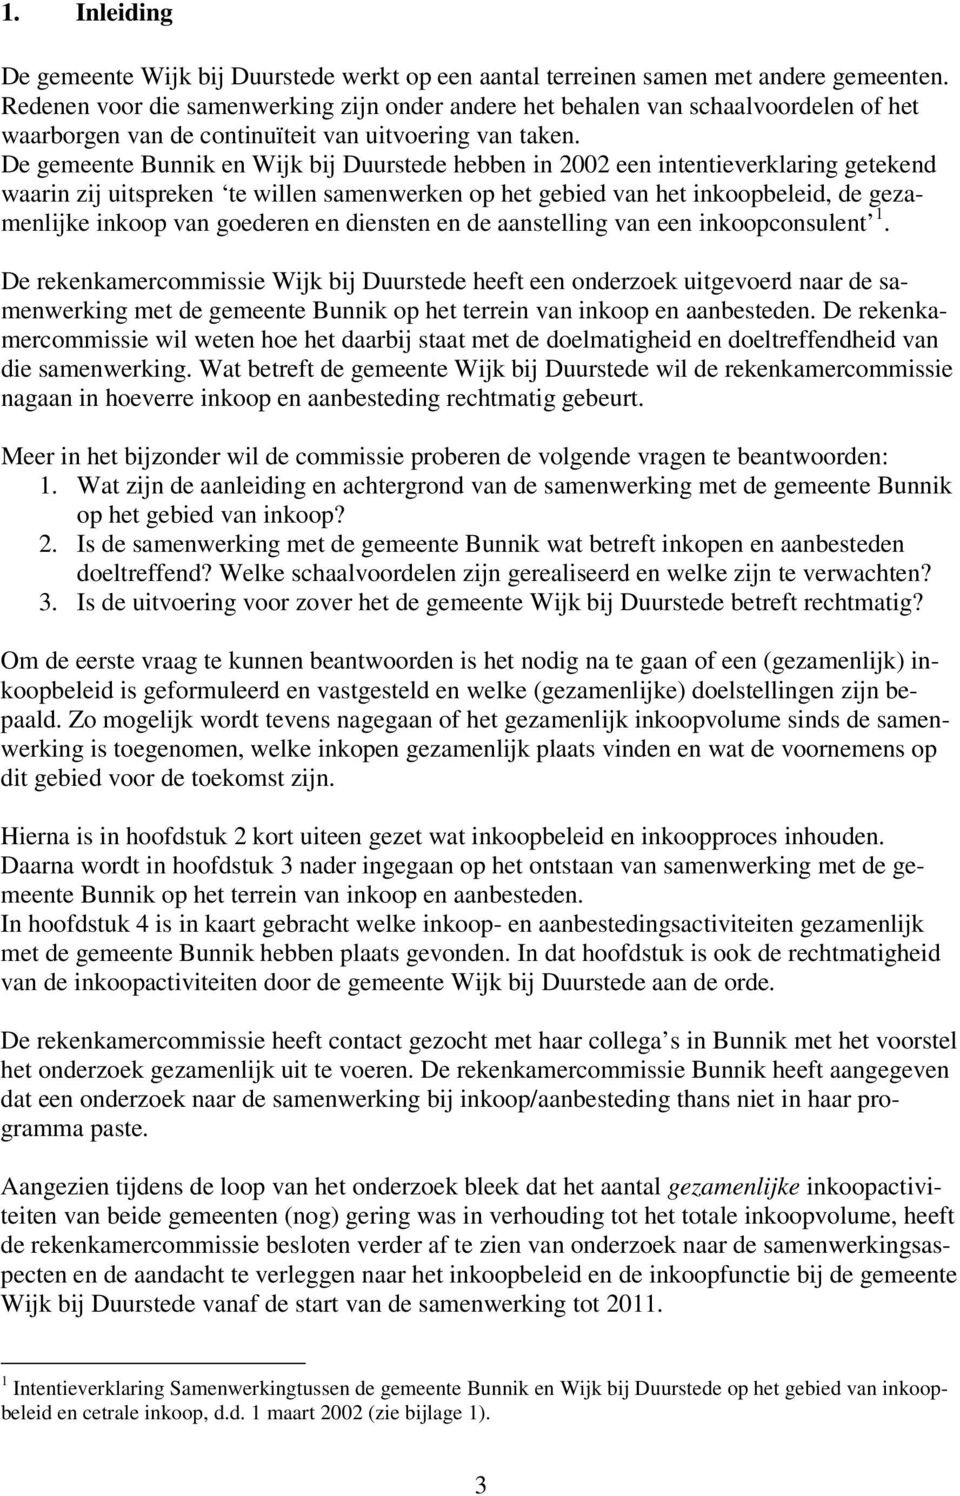 De gemeente Bunnik en Wijk bij Duurstede hebben in 2002 een intentieverklaring getekend waarin zij uitspreken te willen samenwerken op het gebied van het inkoopbeleid, de gezamenlijke inkoop van